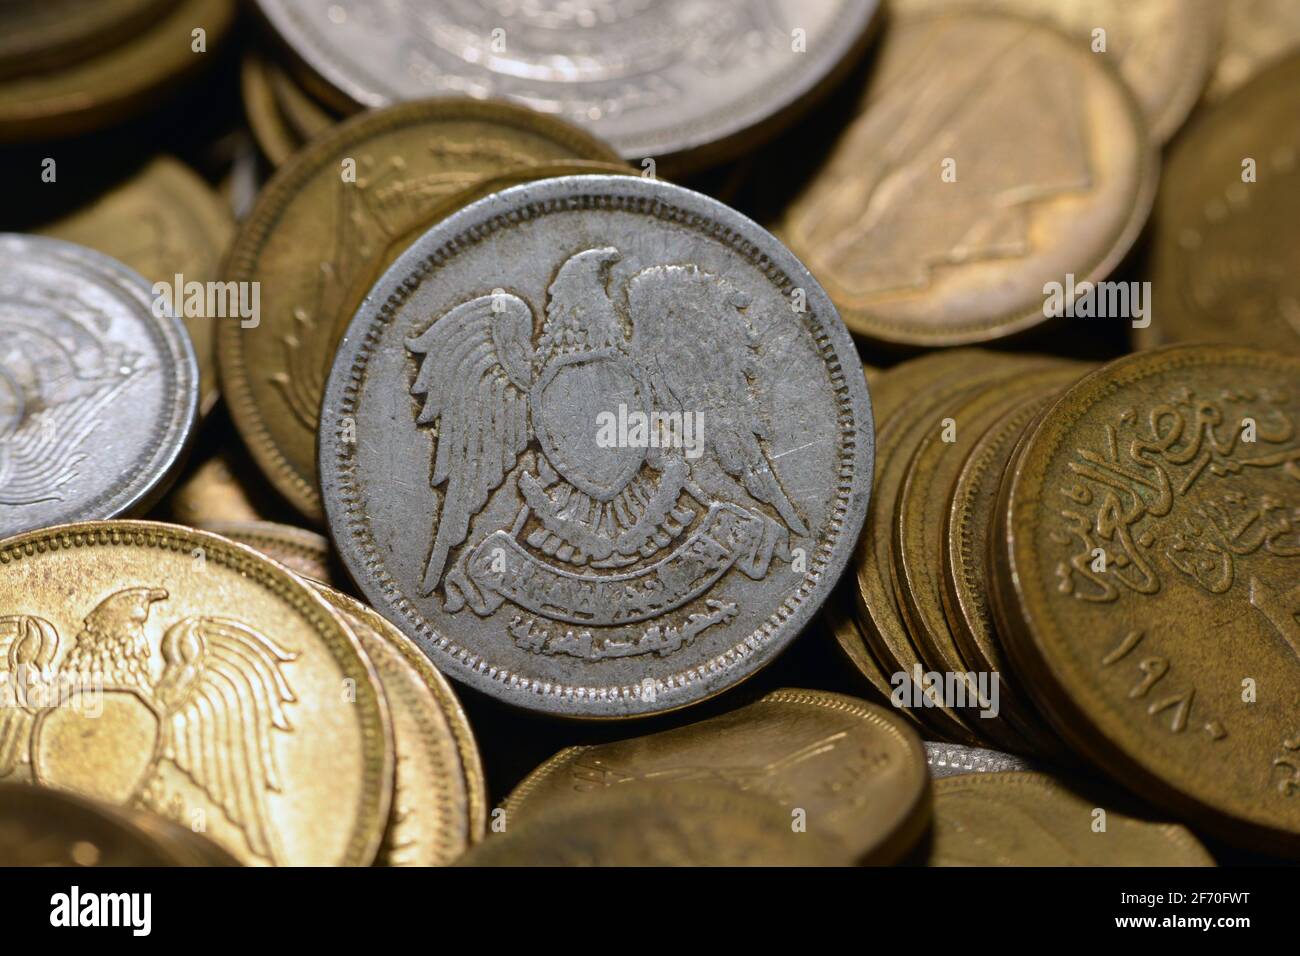 Dieci milliemi egiziani moneta 1972 (lato opposto della moneta), vecchi soldi egiziani di 10 milliemi moneta, vintage retro, il fondo d'argento vecchia moneta. Foto Stock